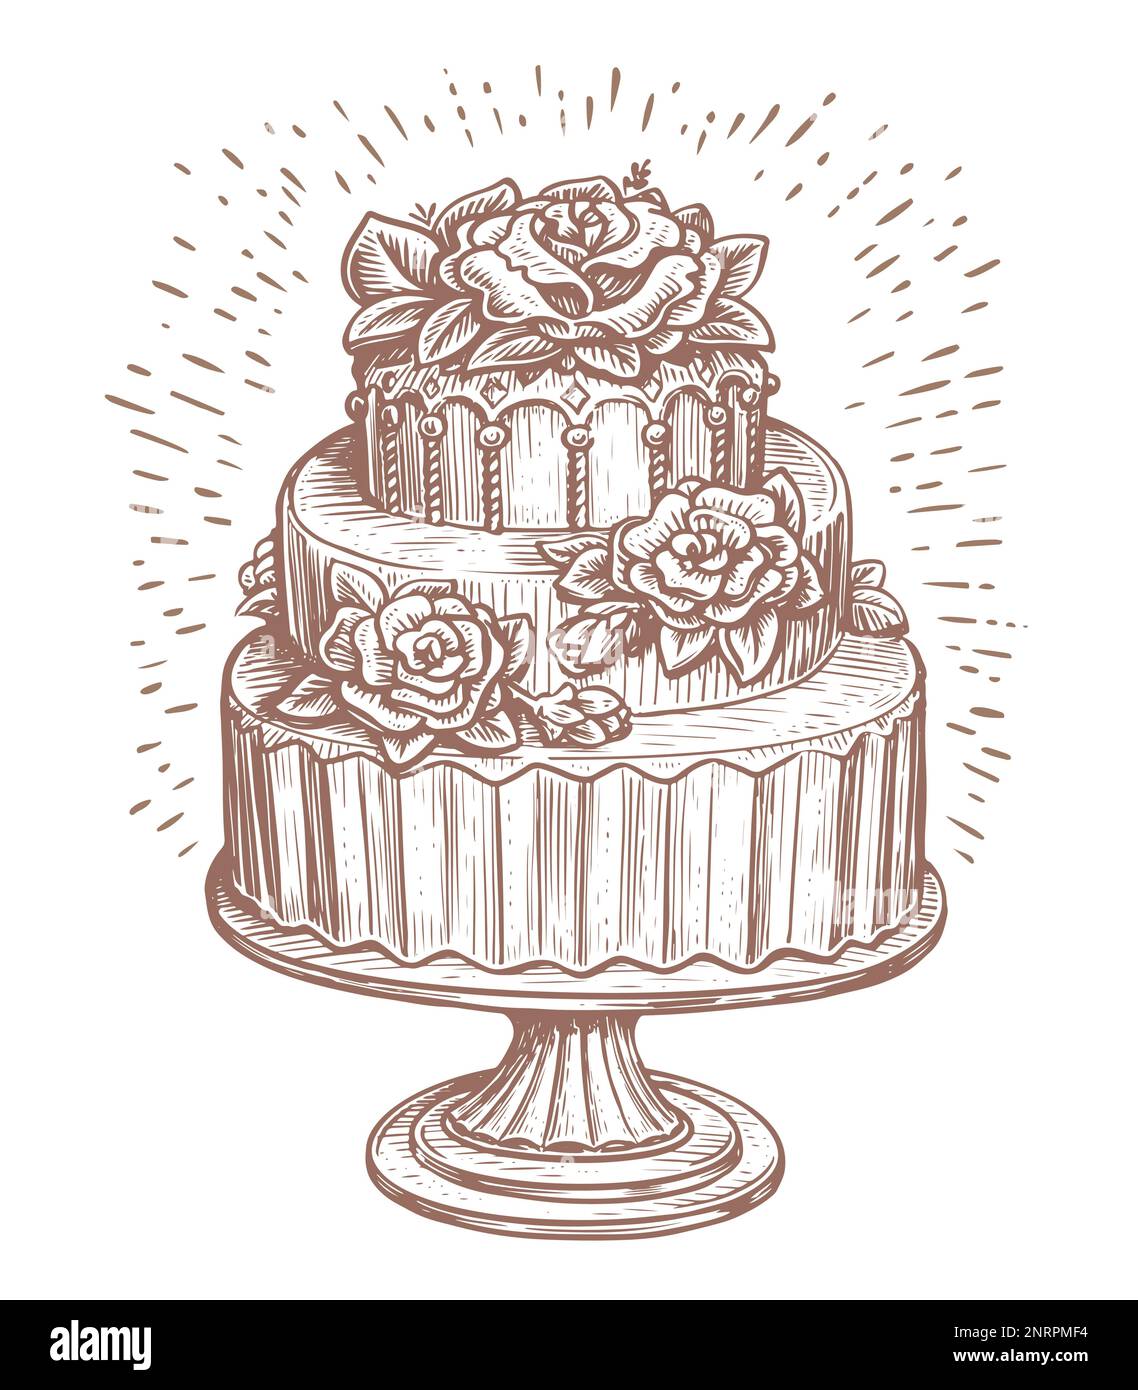 Gâteau de mariage à trois niveaux décoré de roses et de fleurs sur un support en bois. Dessert, esquisse de nourriture douce. Illustration vectorielle Illustration de Vecteur